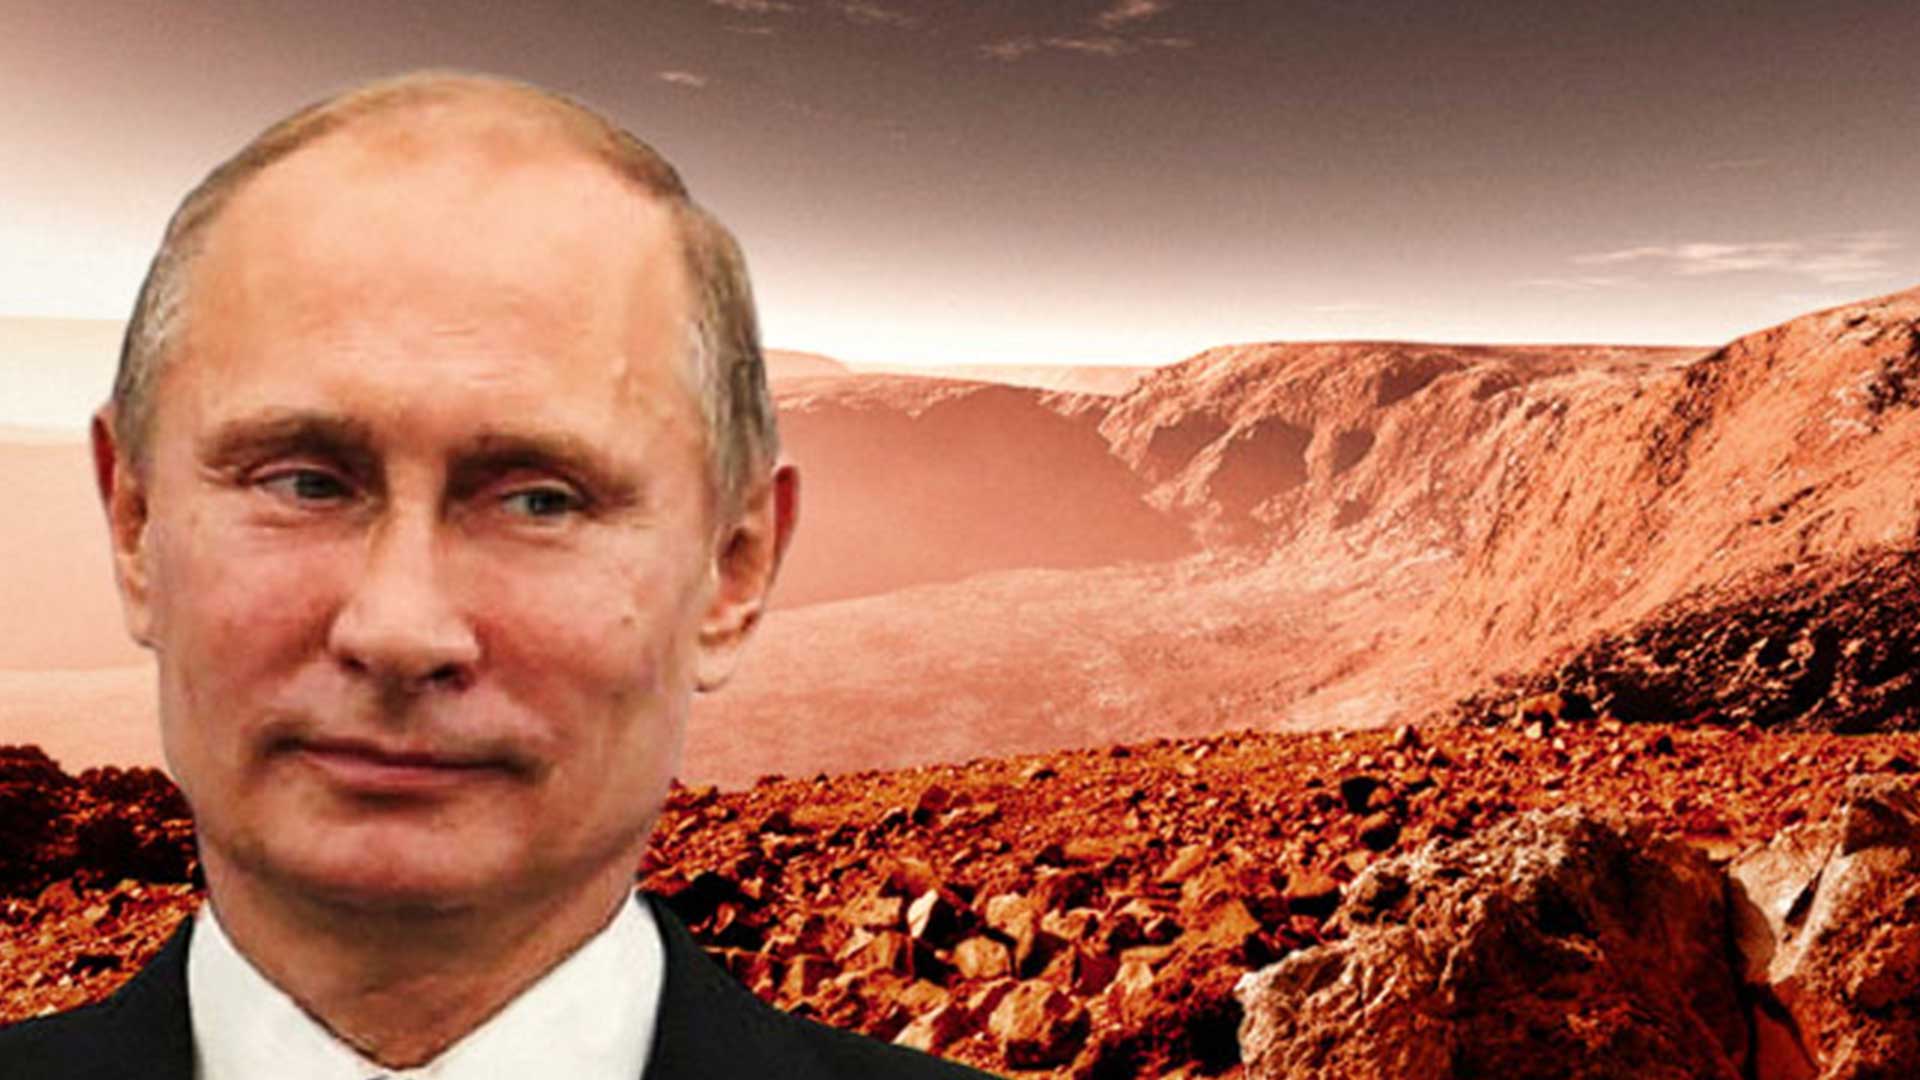 Putin asegura que podrá llegar a Marte en mitad de tiempo que la NASA